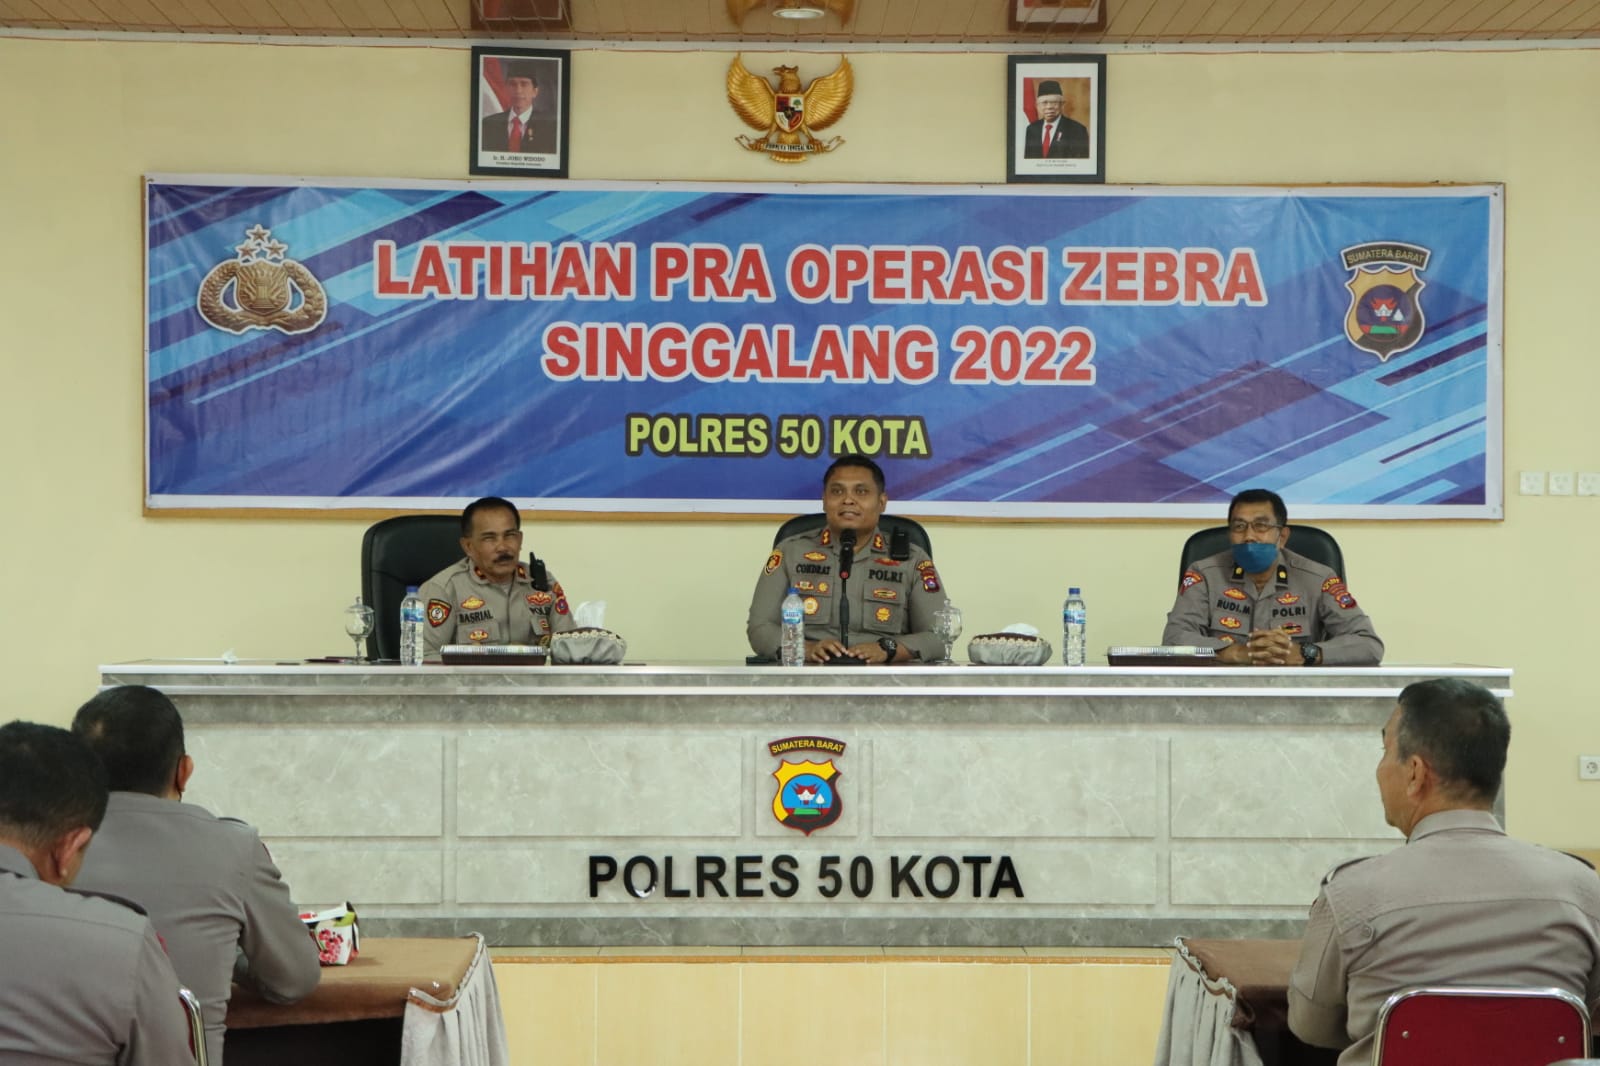 Polres 50 Kota Menggelar Latihan Pra Operasi Zebra Singgalang 2022